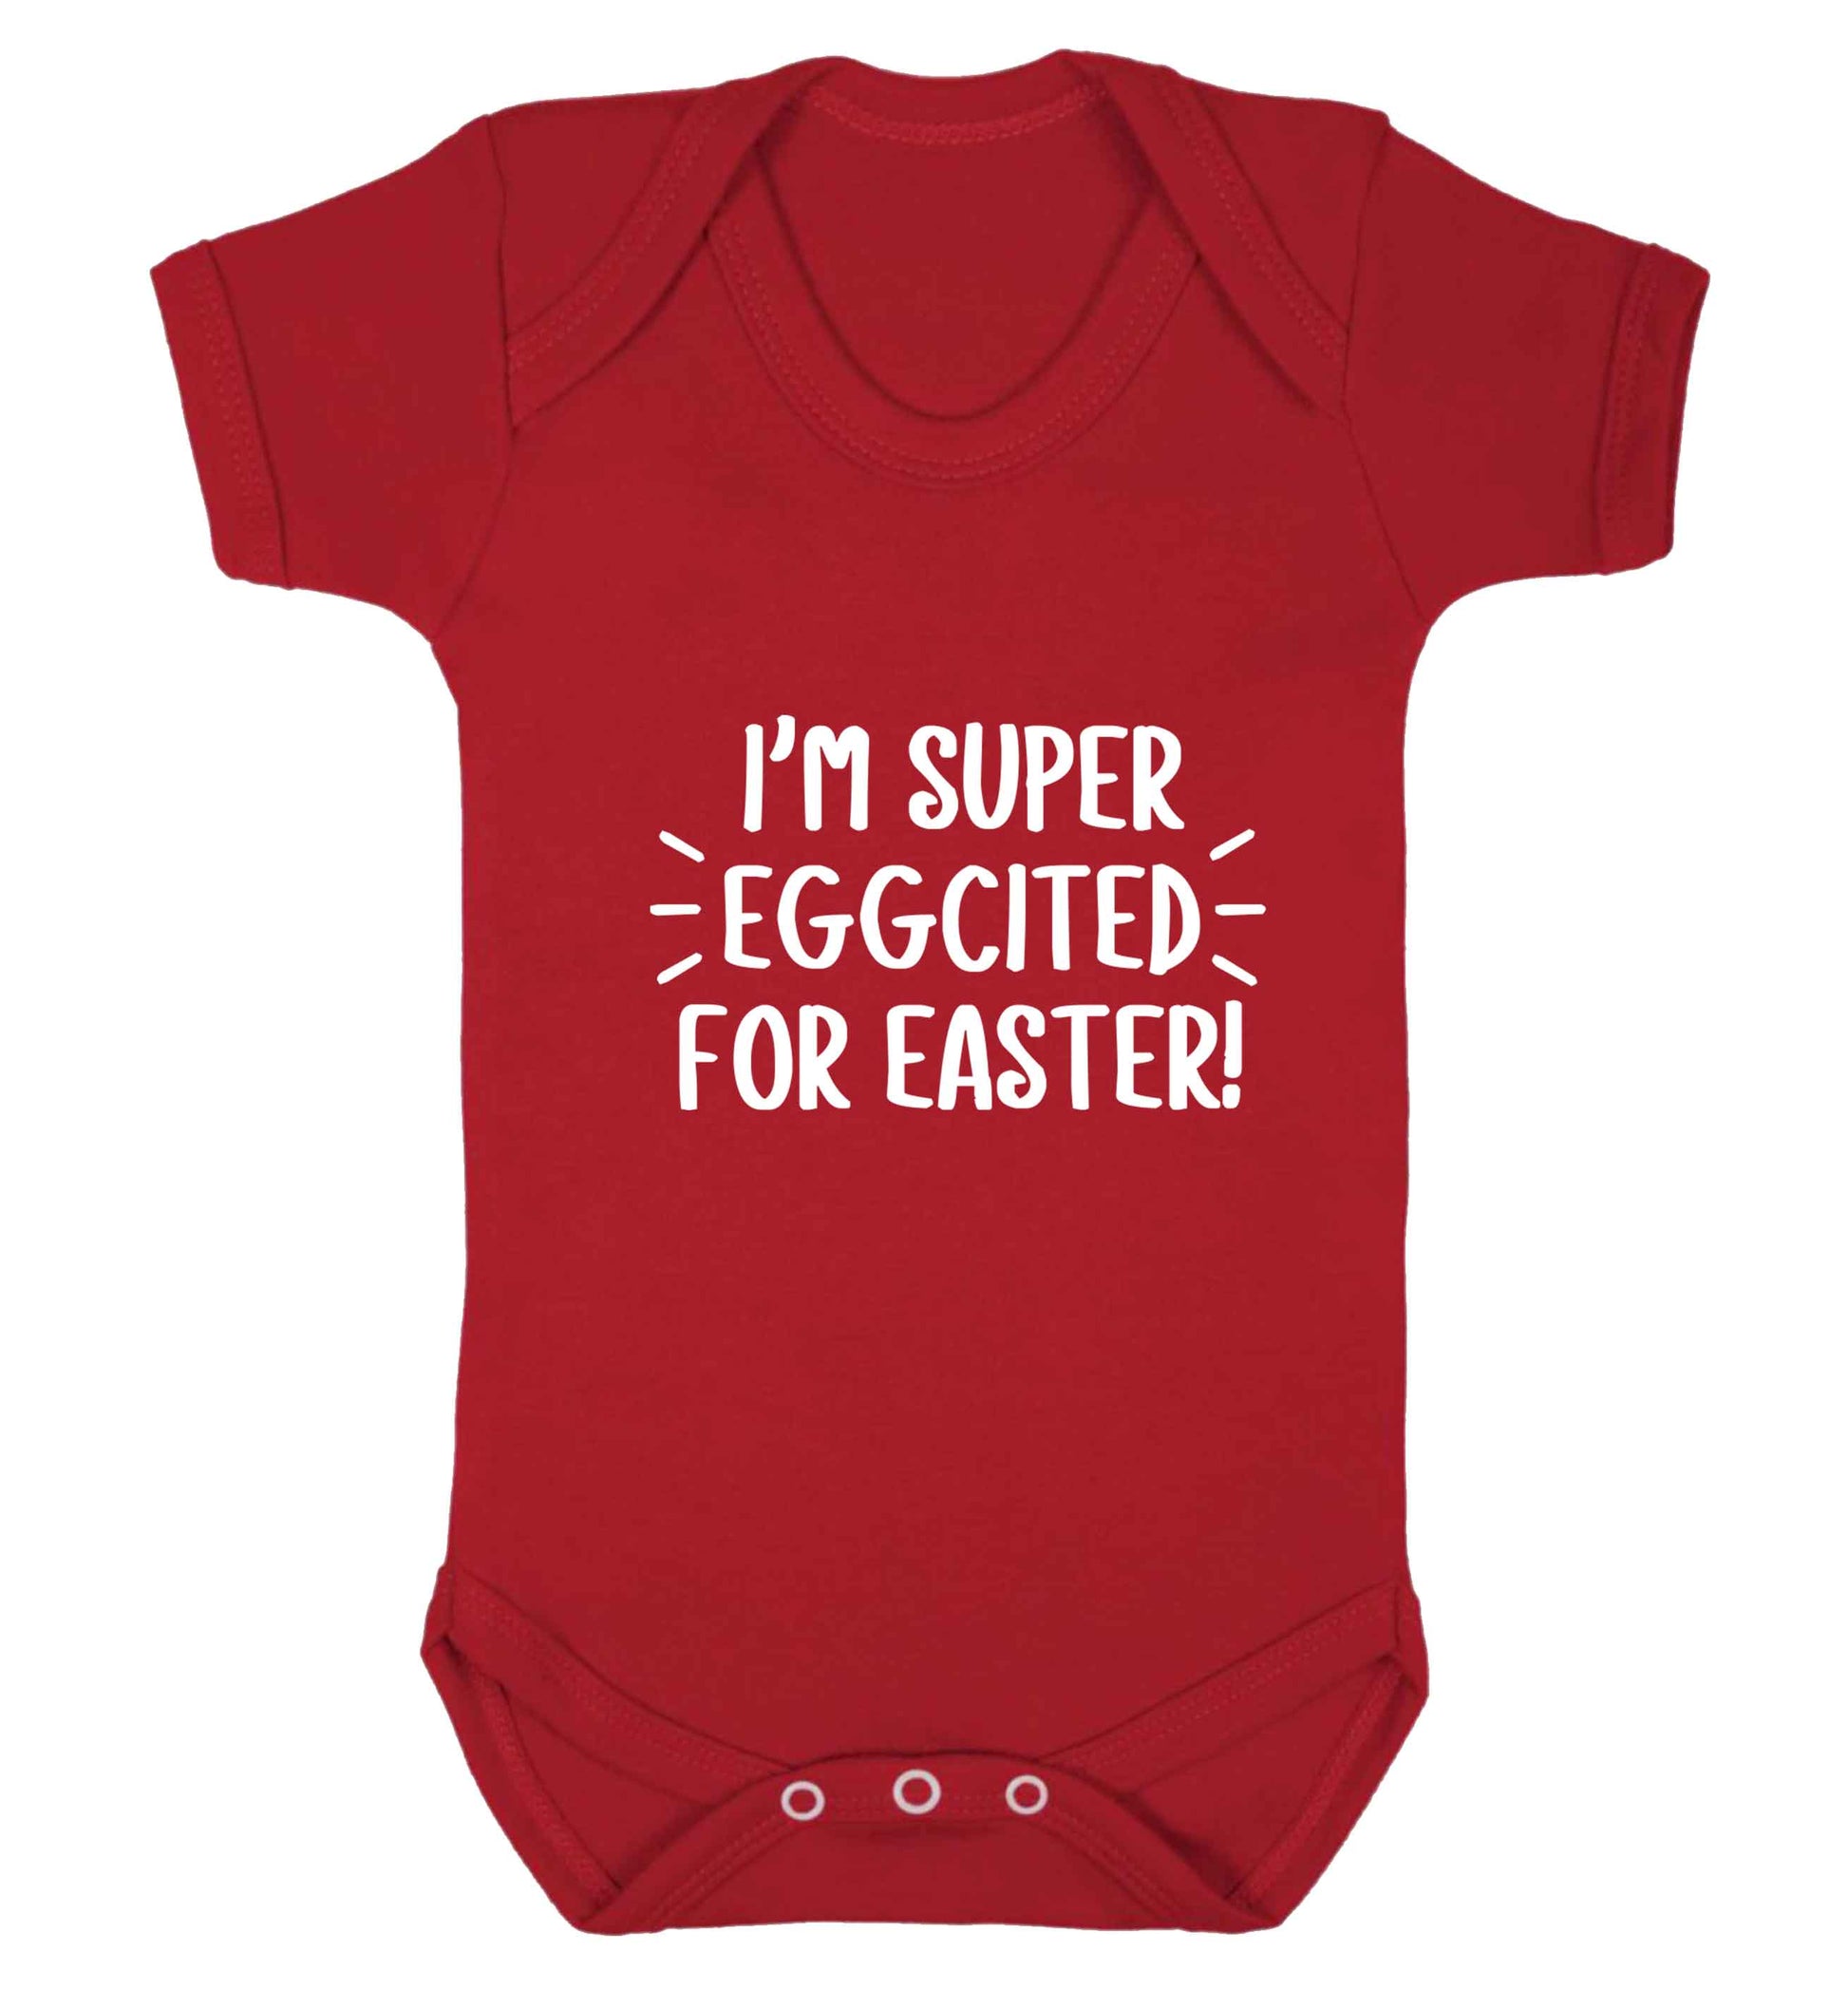 I'm super eggcited for Easter baby vest red 18-24 months